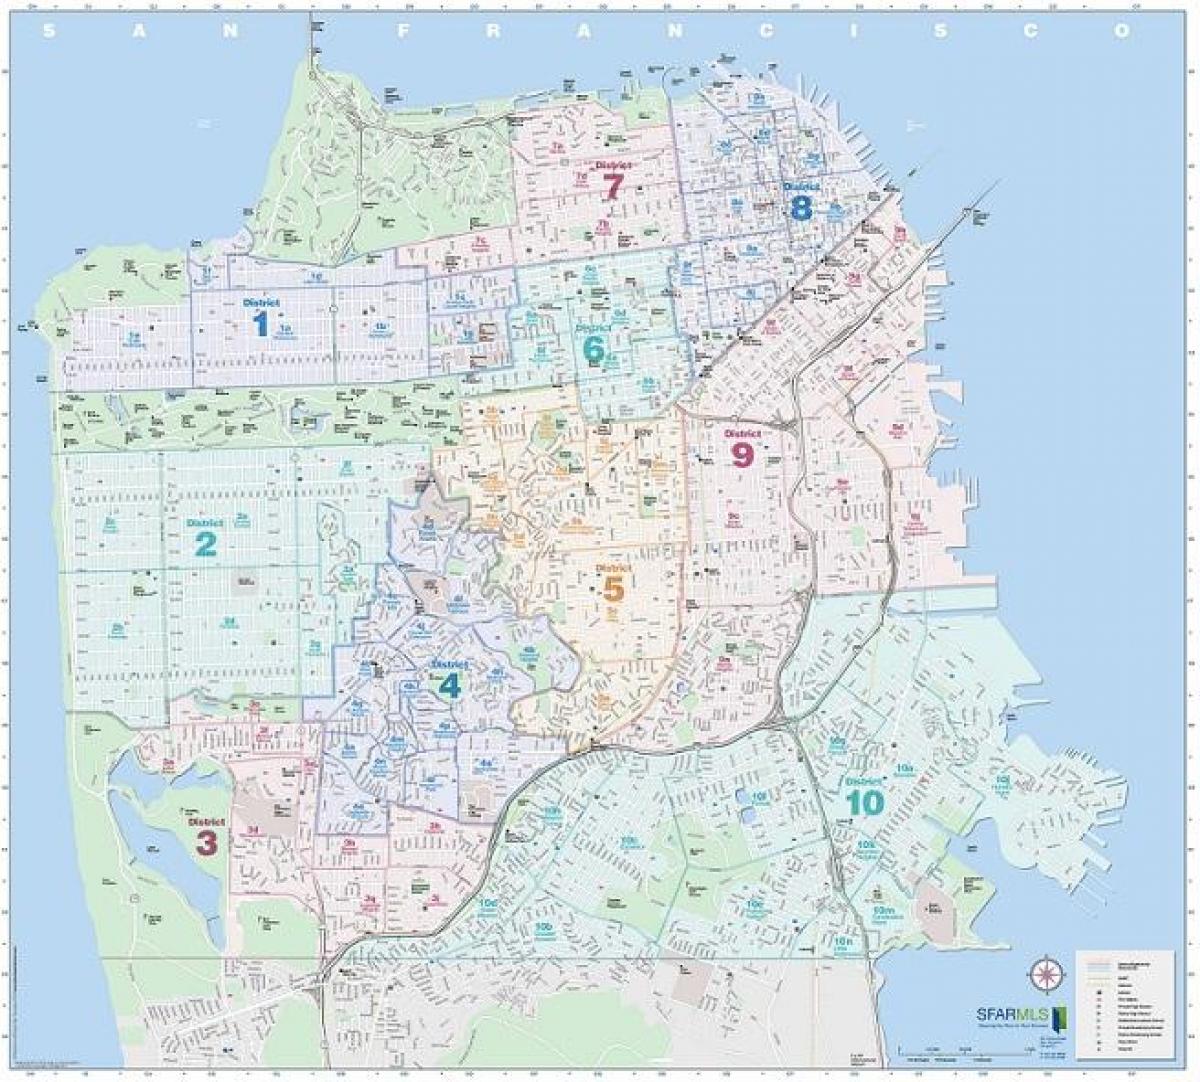 San Francisco mls zemljevid